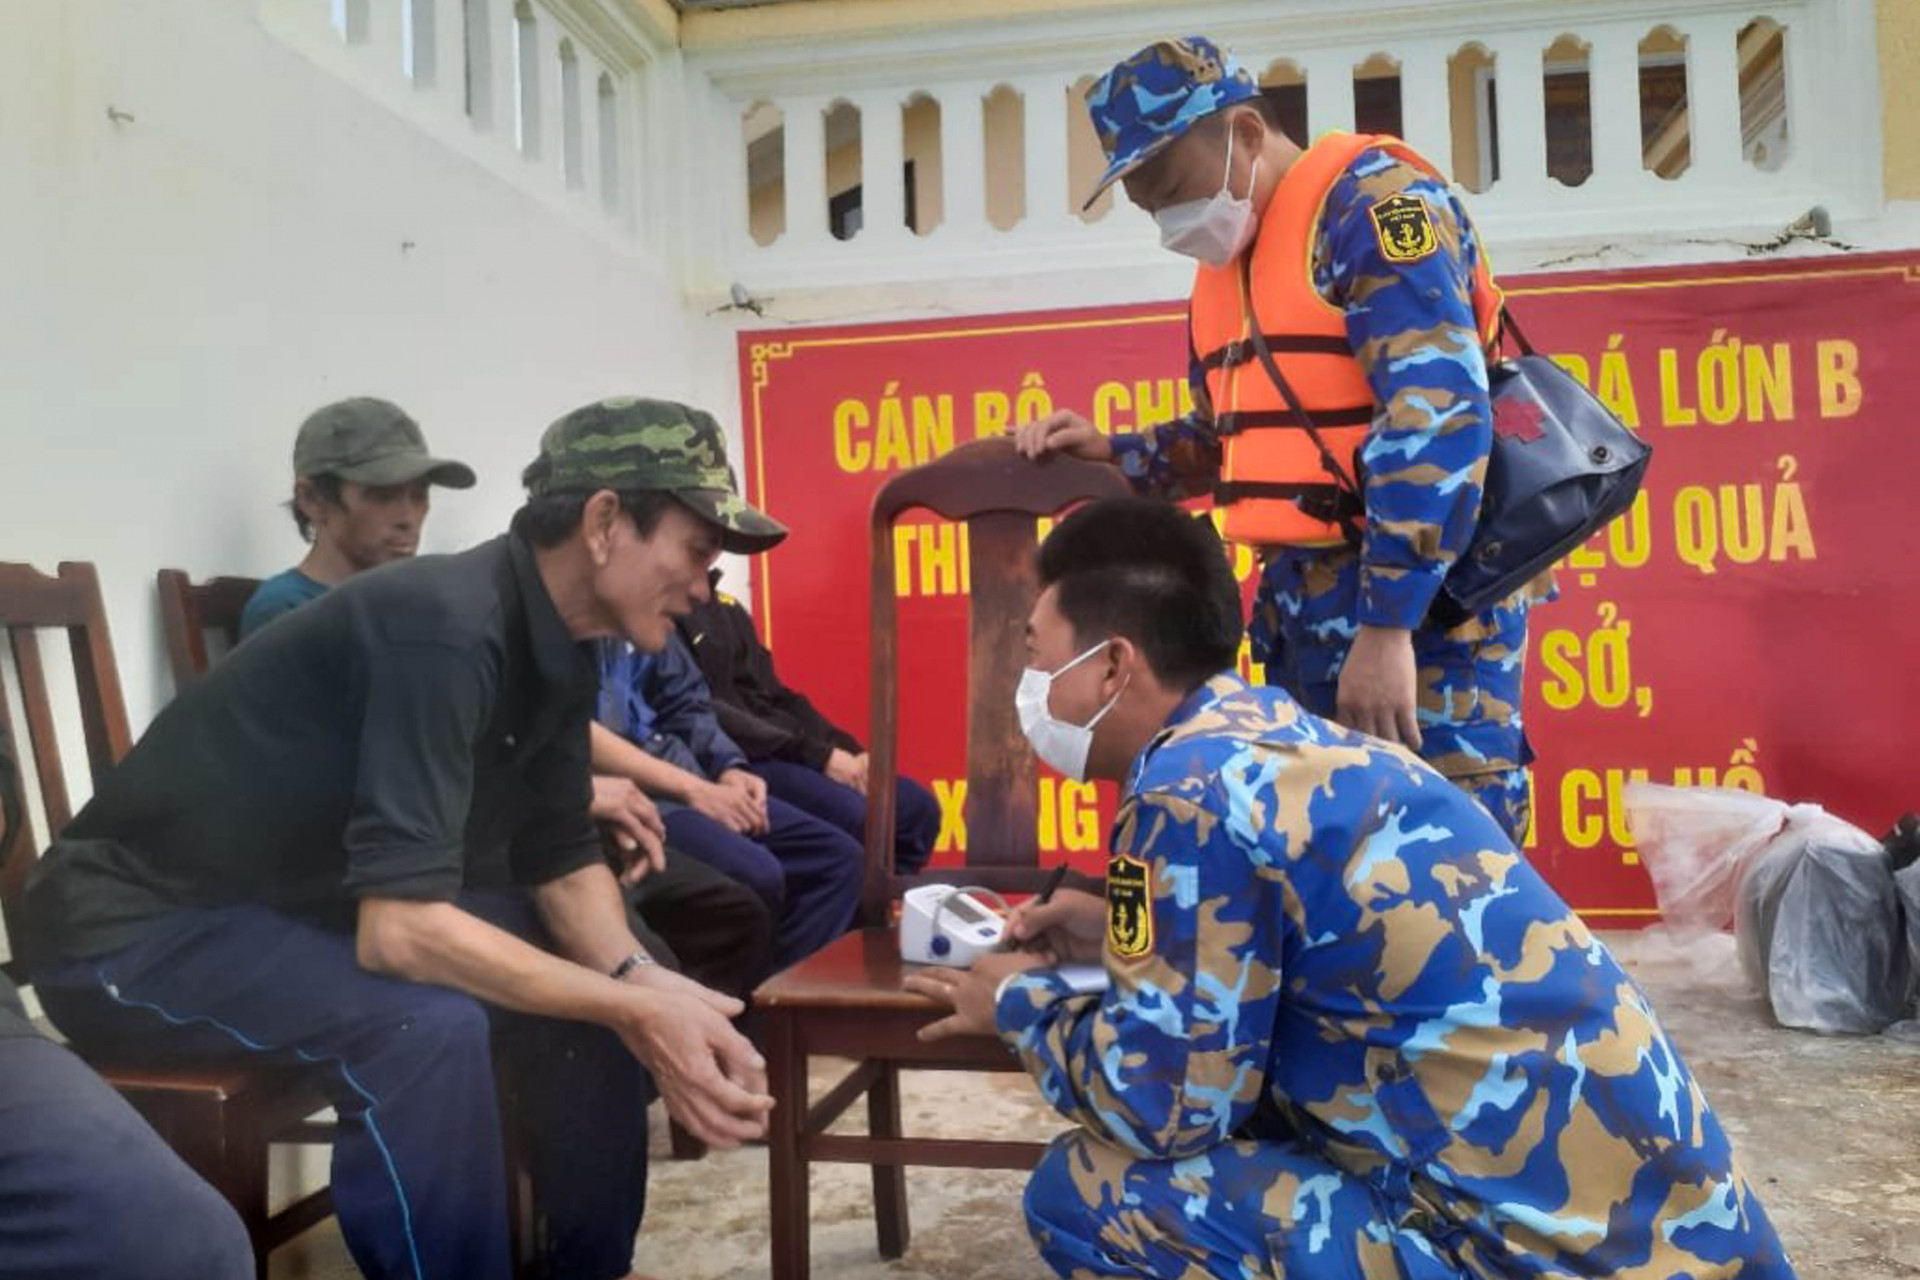 Cán bộ, chiến sĩ đảo Đá Lớn B hỗ trợ đưa ngư dân trên tàu cá PY 92396 TS lên đảo và thăm khám sức khoẻ cho ngư dân